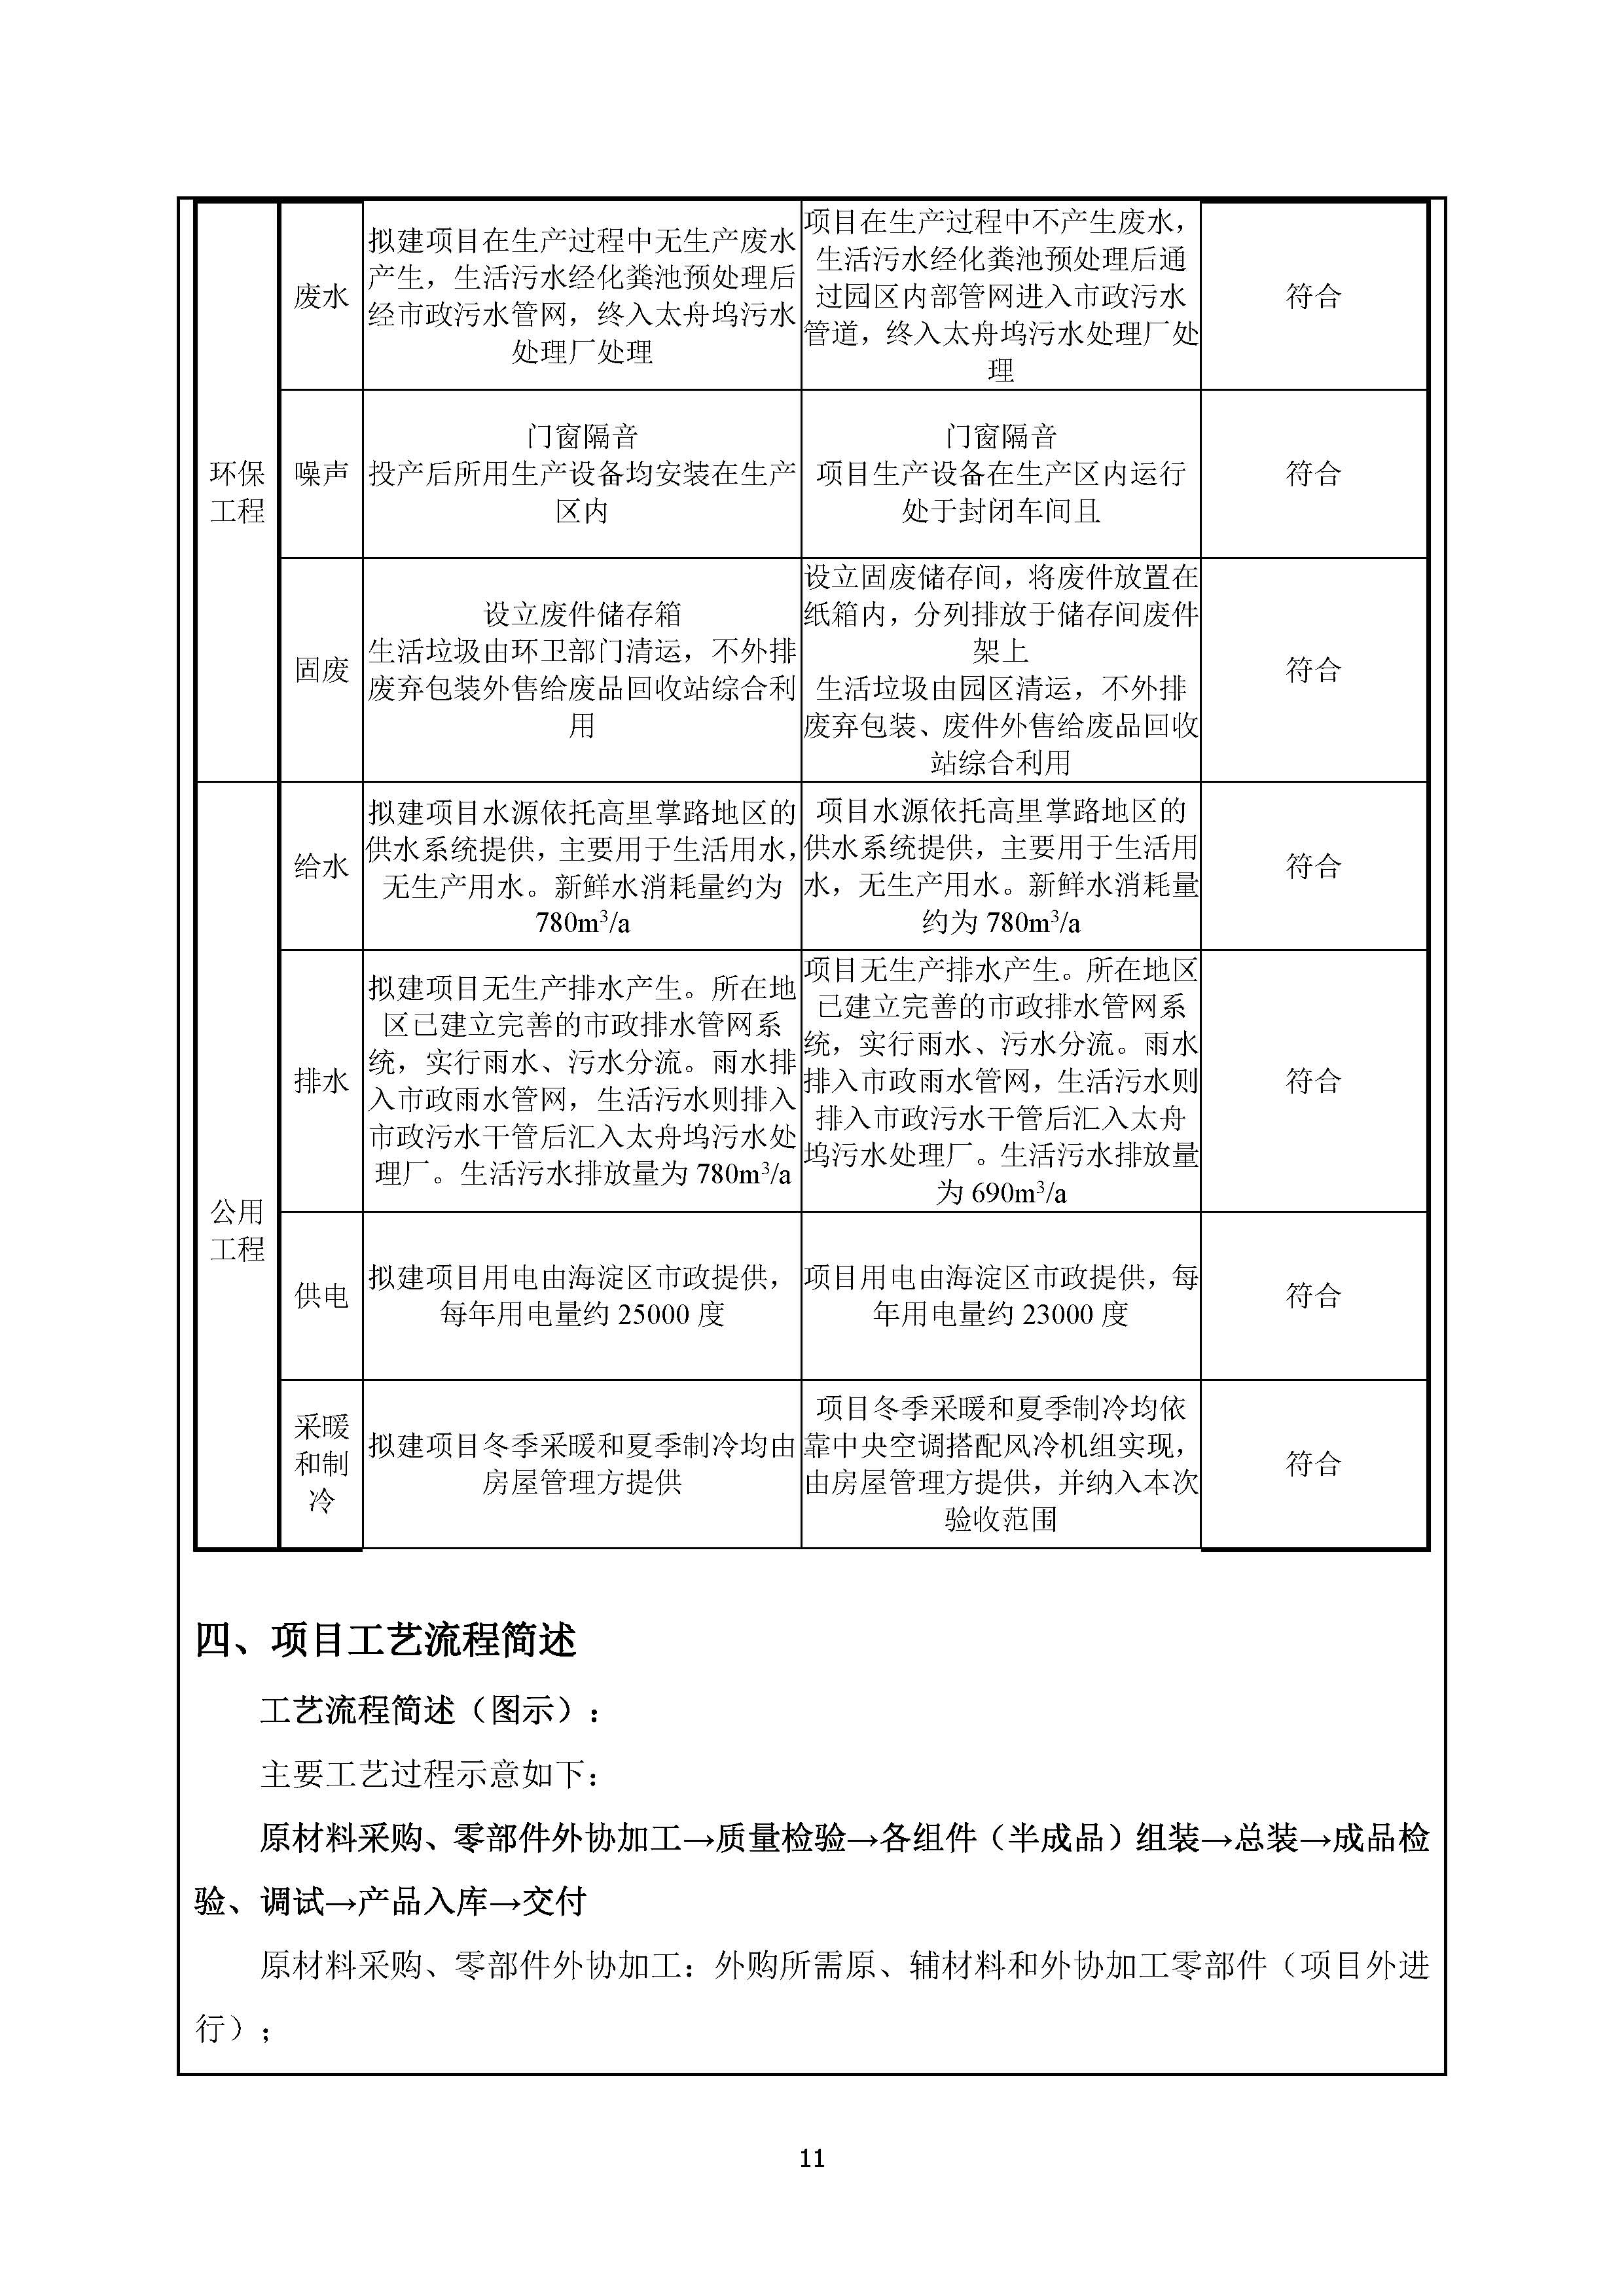 北京博瑞莱智能科技集团有限公司项目竣工环境保护验收监测报告全本公示(图15)